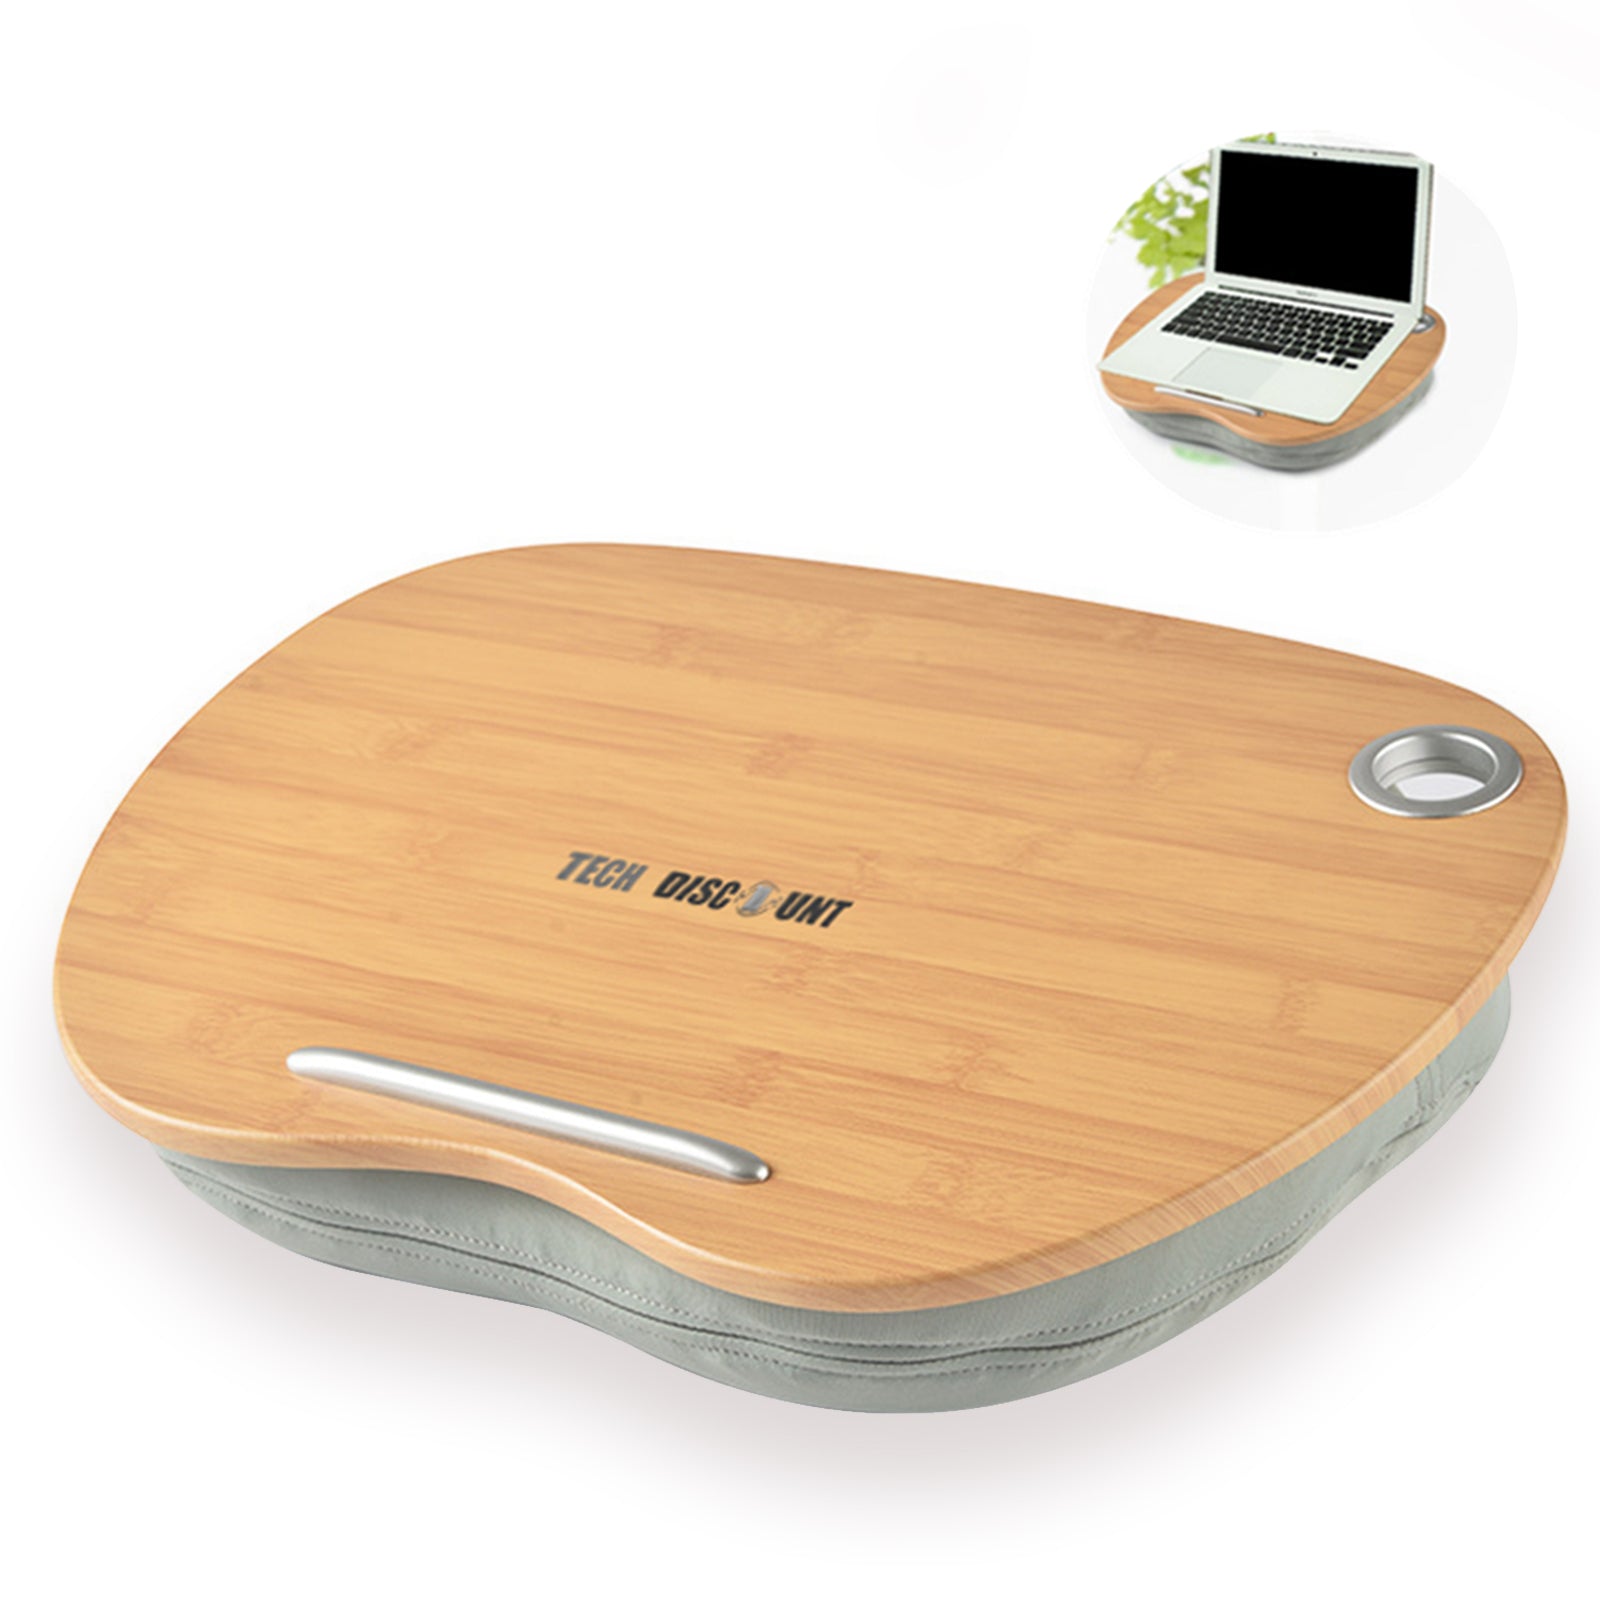 TD® support pour ordinateur portable avec coussin lit bureau genoux bois pc tablette samsung tactile ipad genoux apple windows table